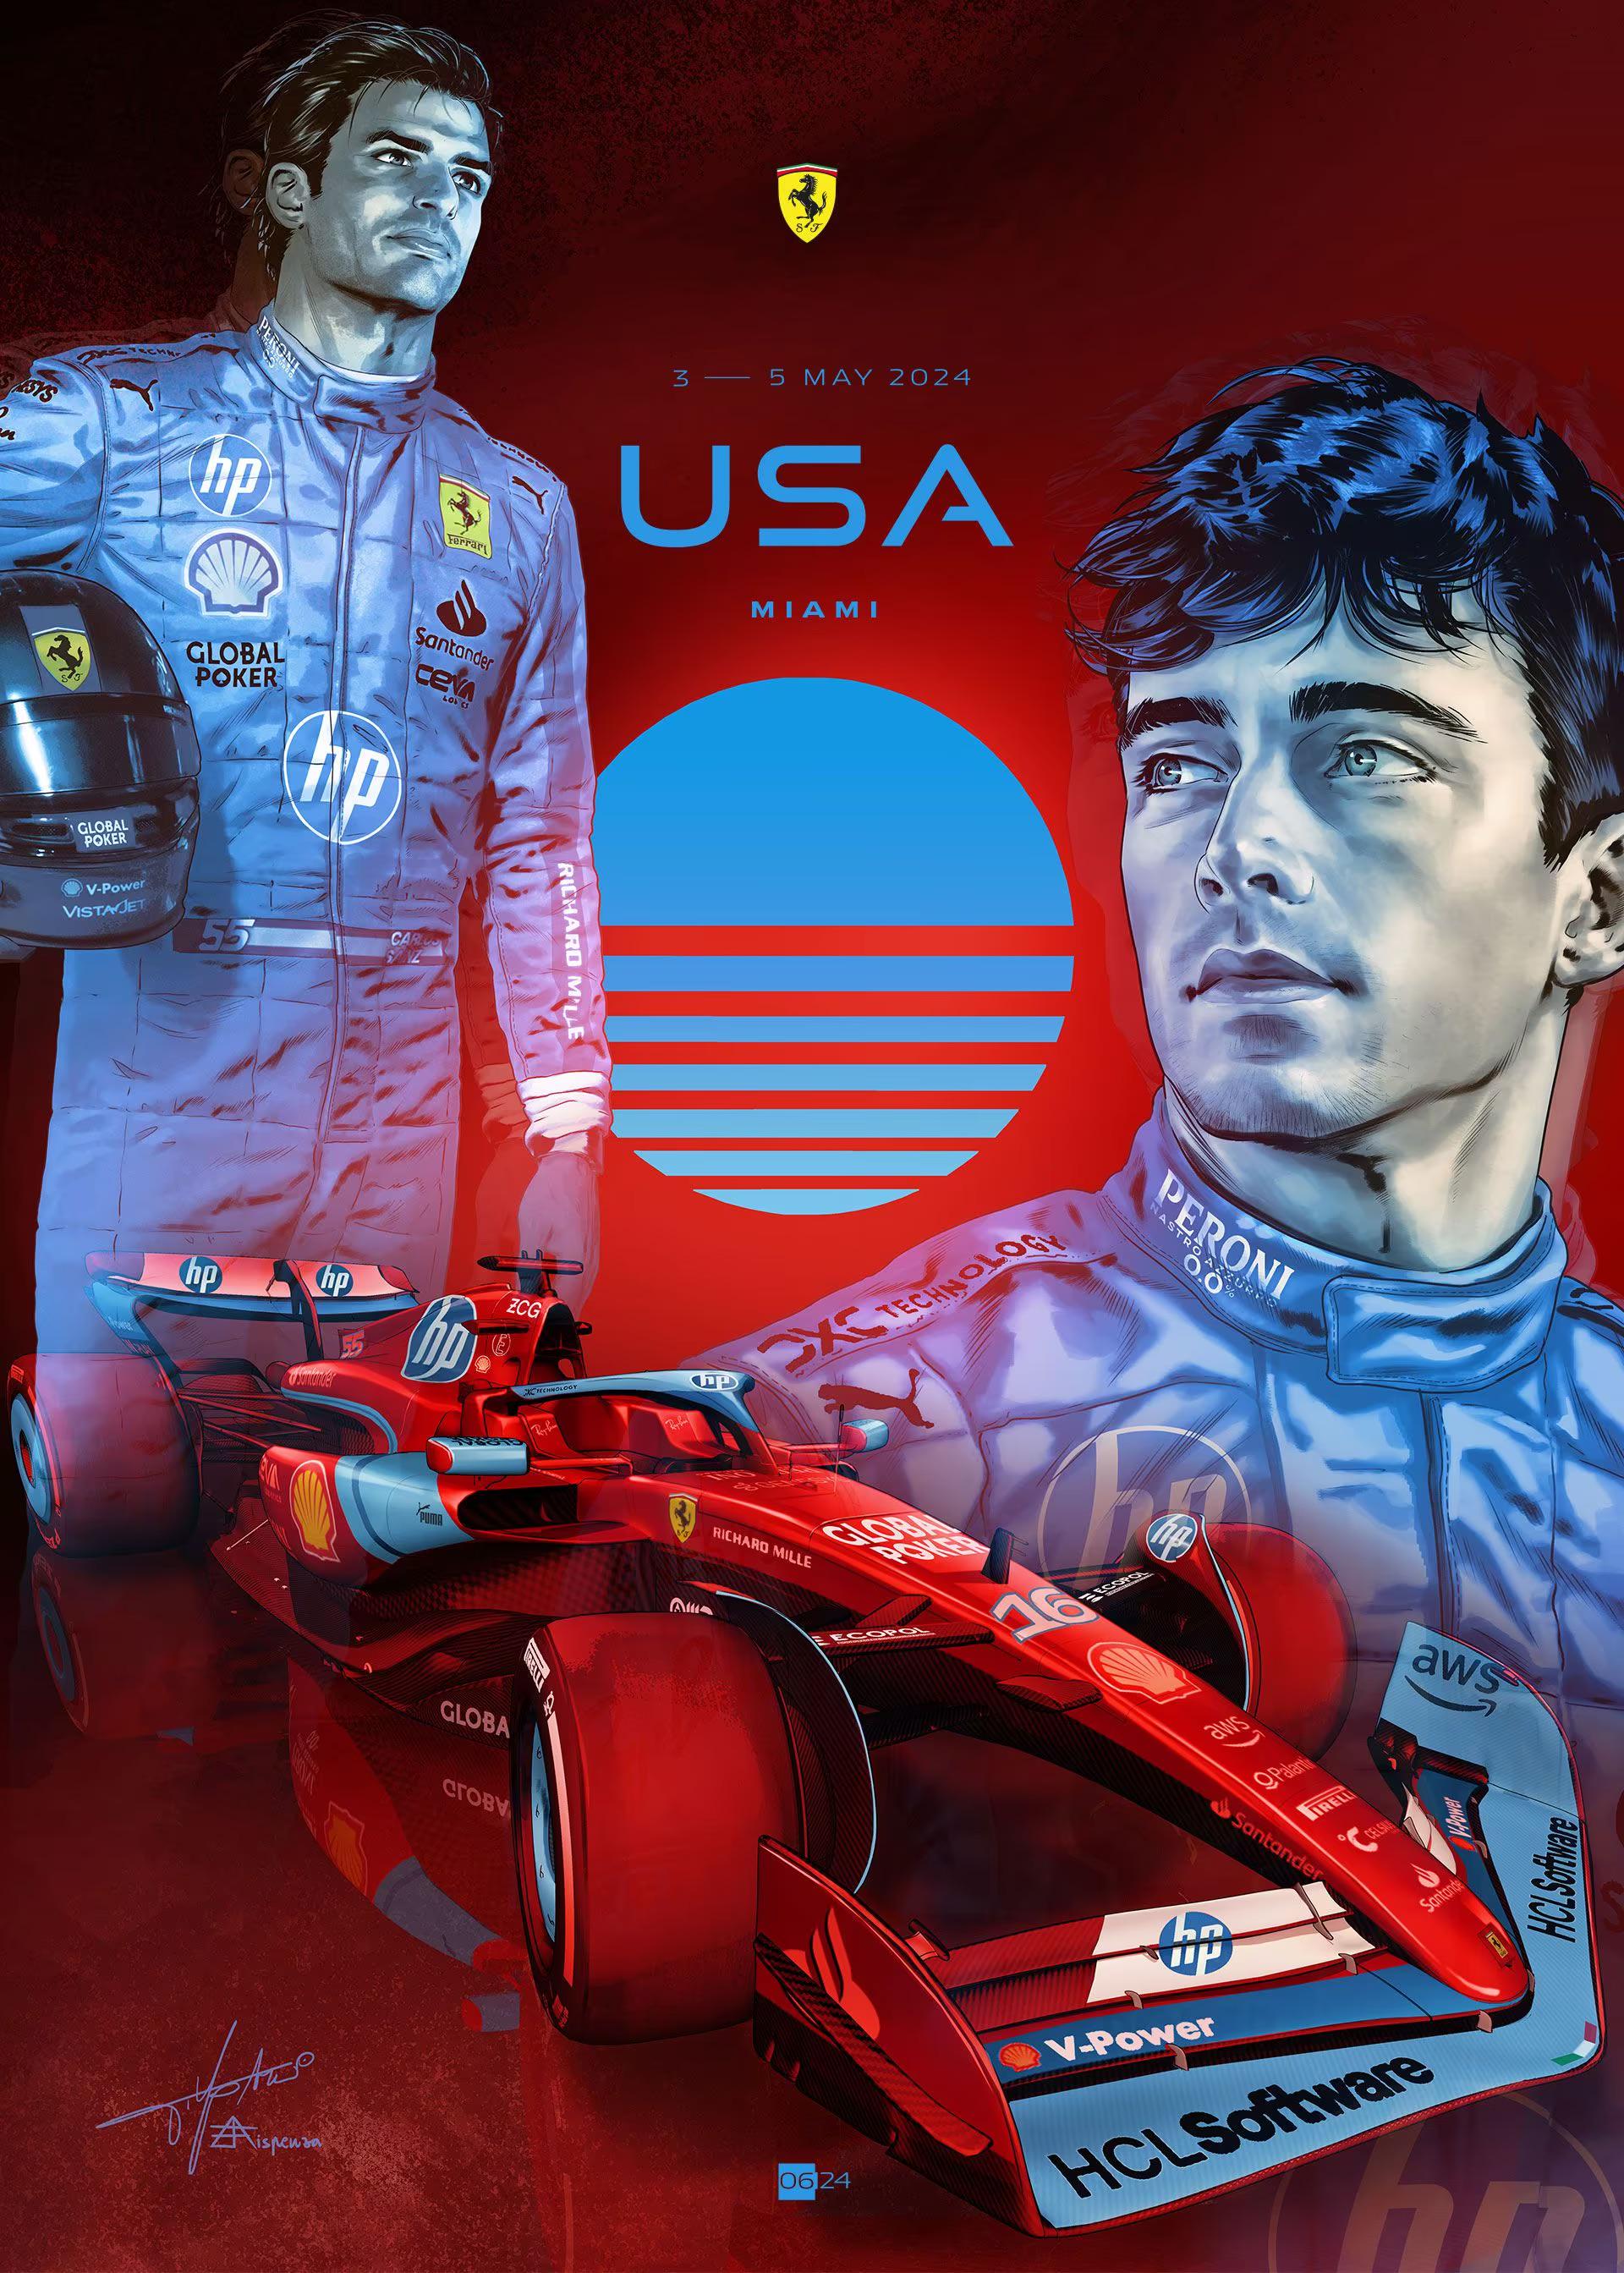  2024 Ferrari F1 RACE 6 Miami grand prix race cover art poster